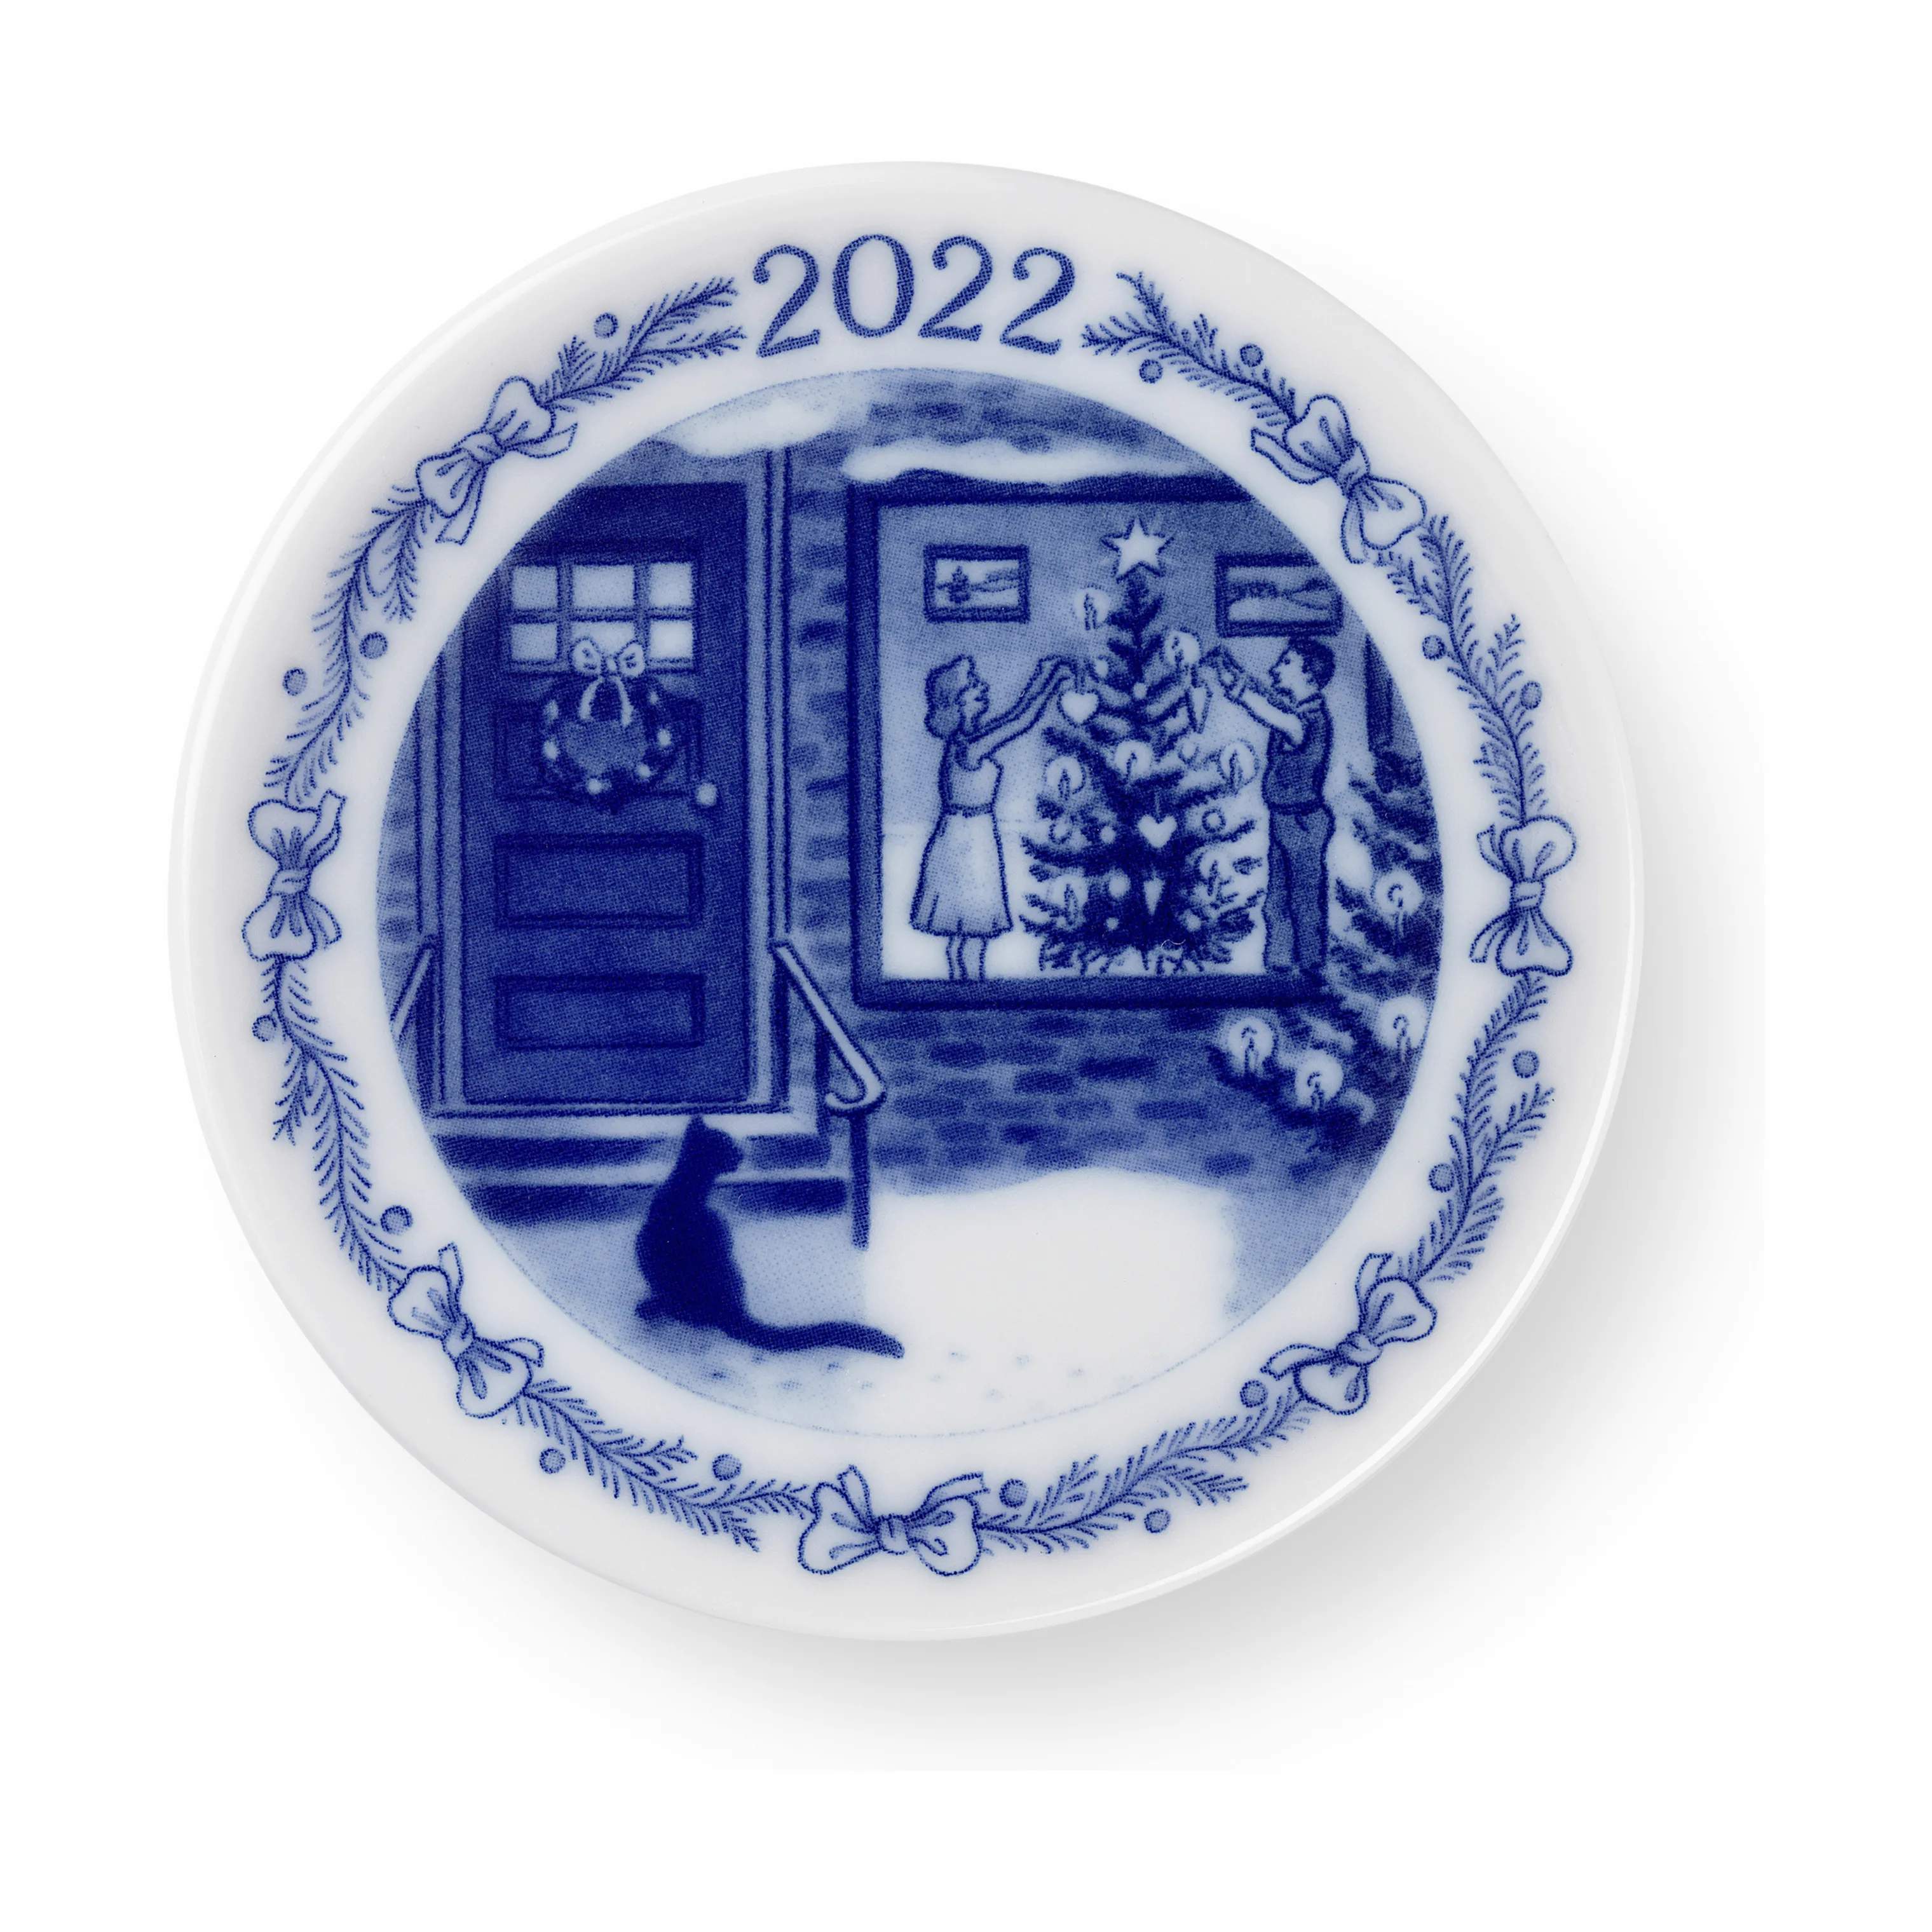 Juleplakette 2022 - Juletræet pyntes